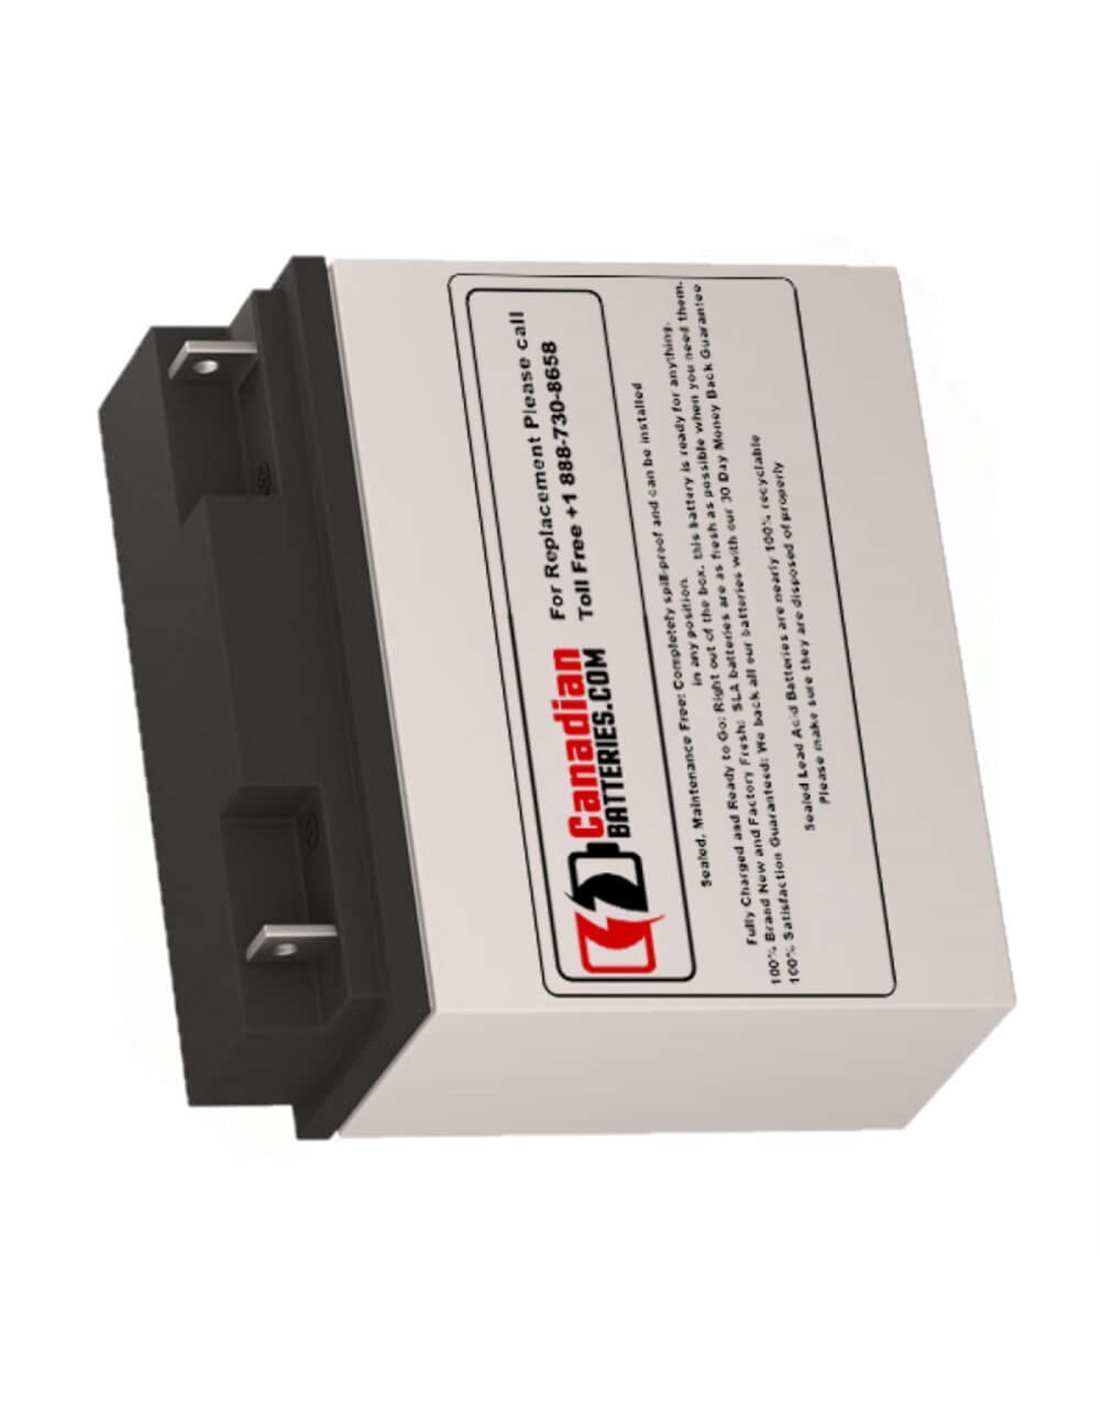 Battery for Safe Sola Sps1200b UPS, 1 x 12V, 18ah - 216Wh